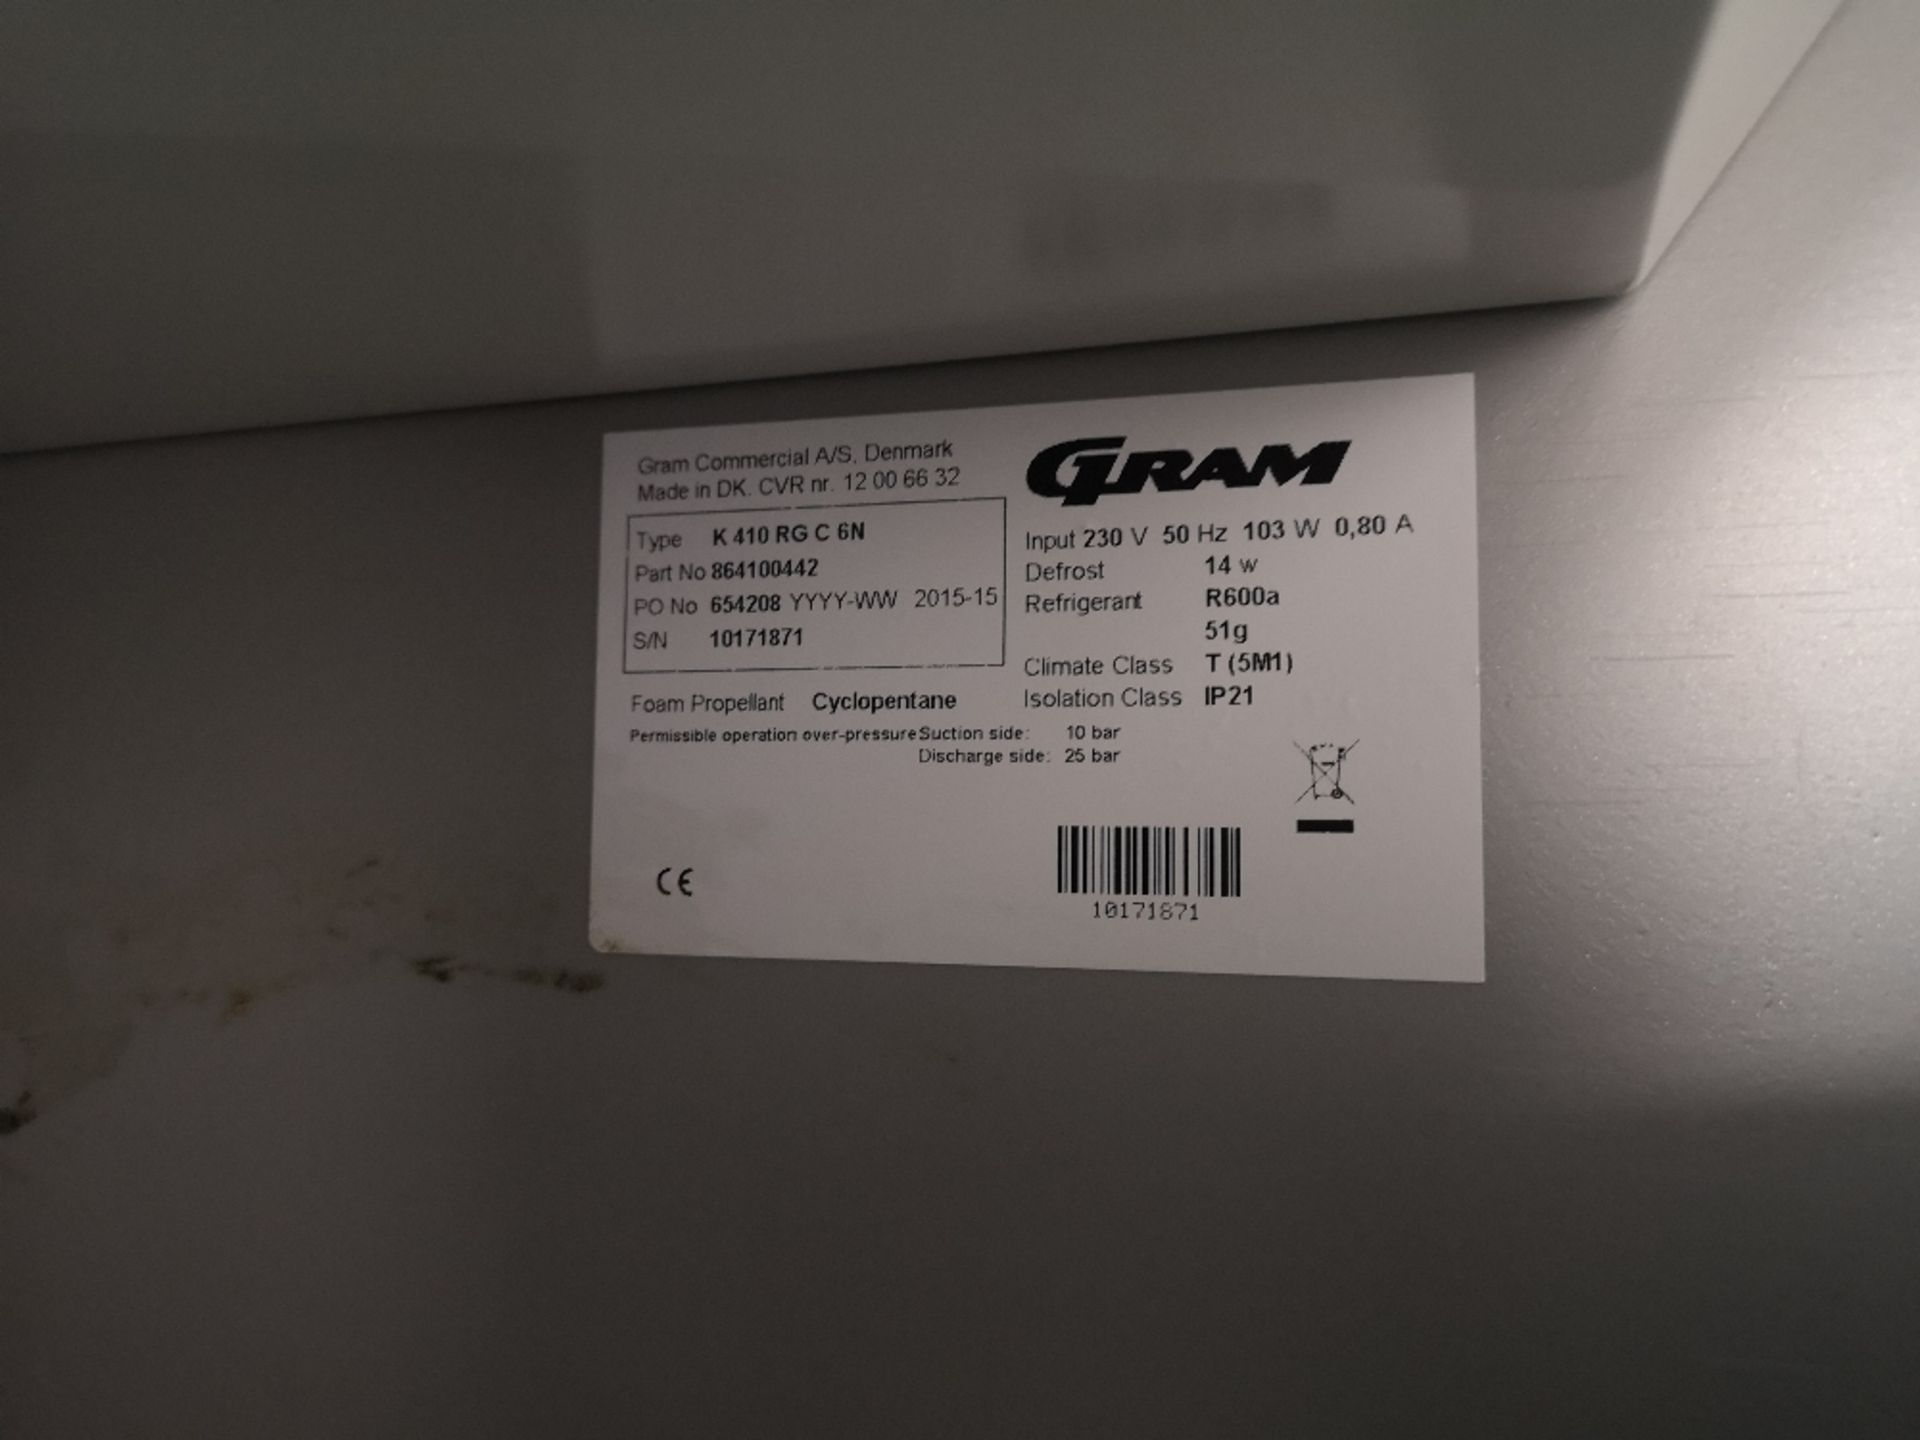 Gram K410 Upright Stainless Steel Fridge - Image 4 of 4